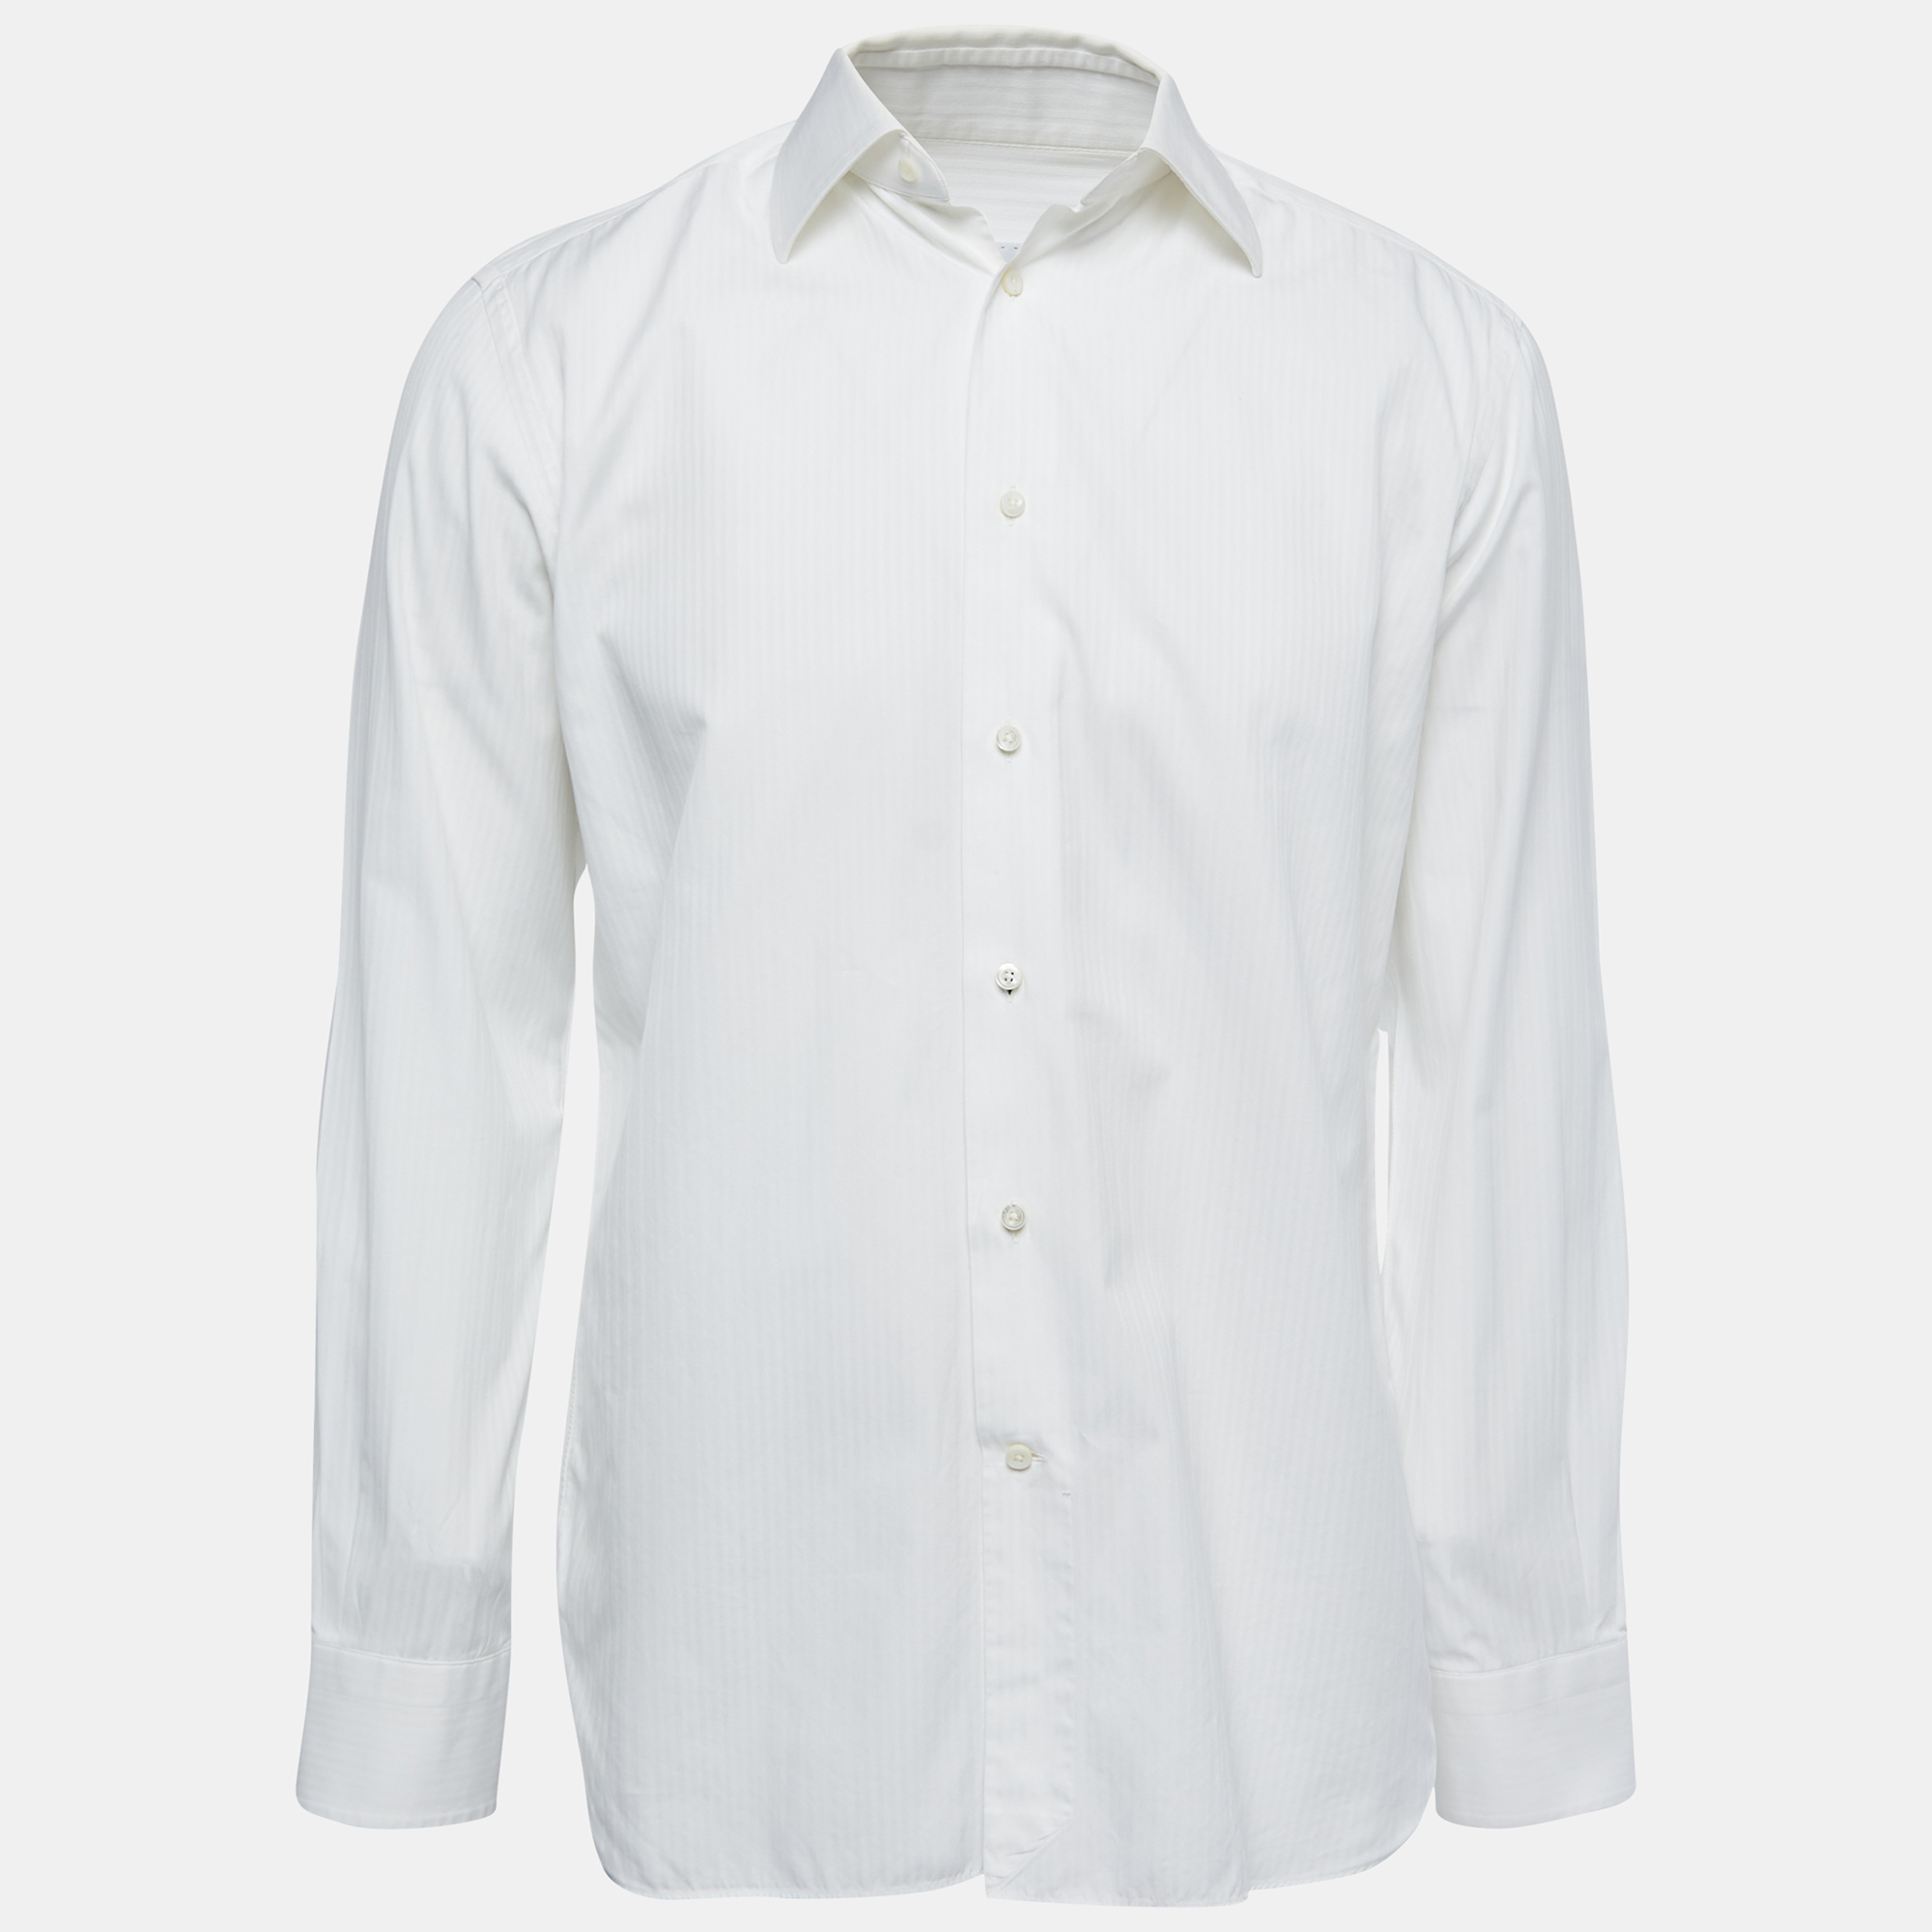 Ermenegildo Zegna White Patterned Cotton Full Sleeve Shirt M